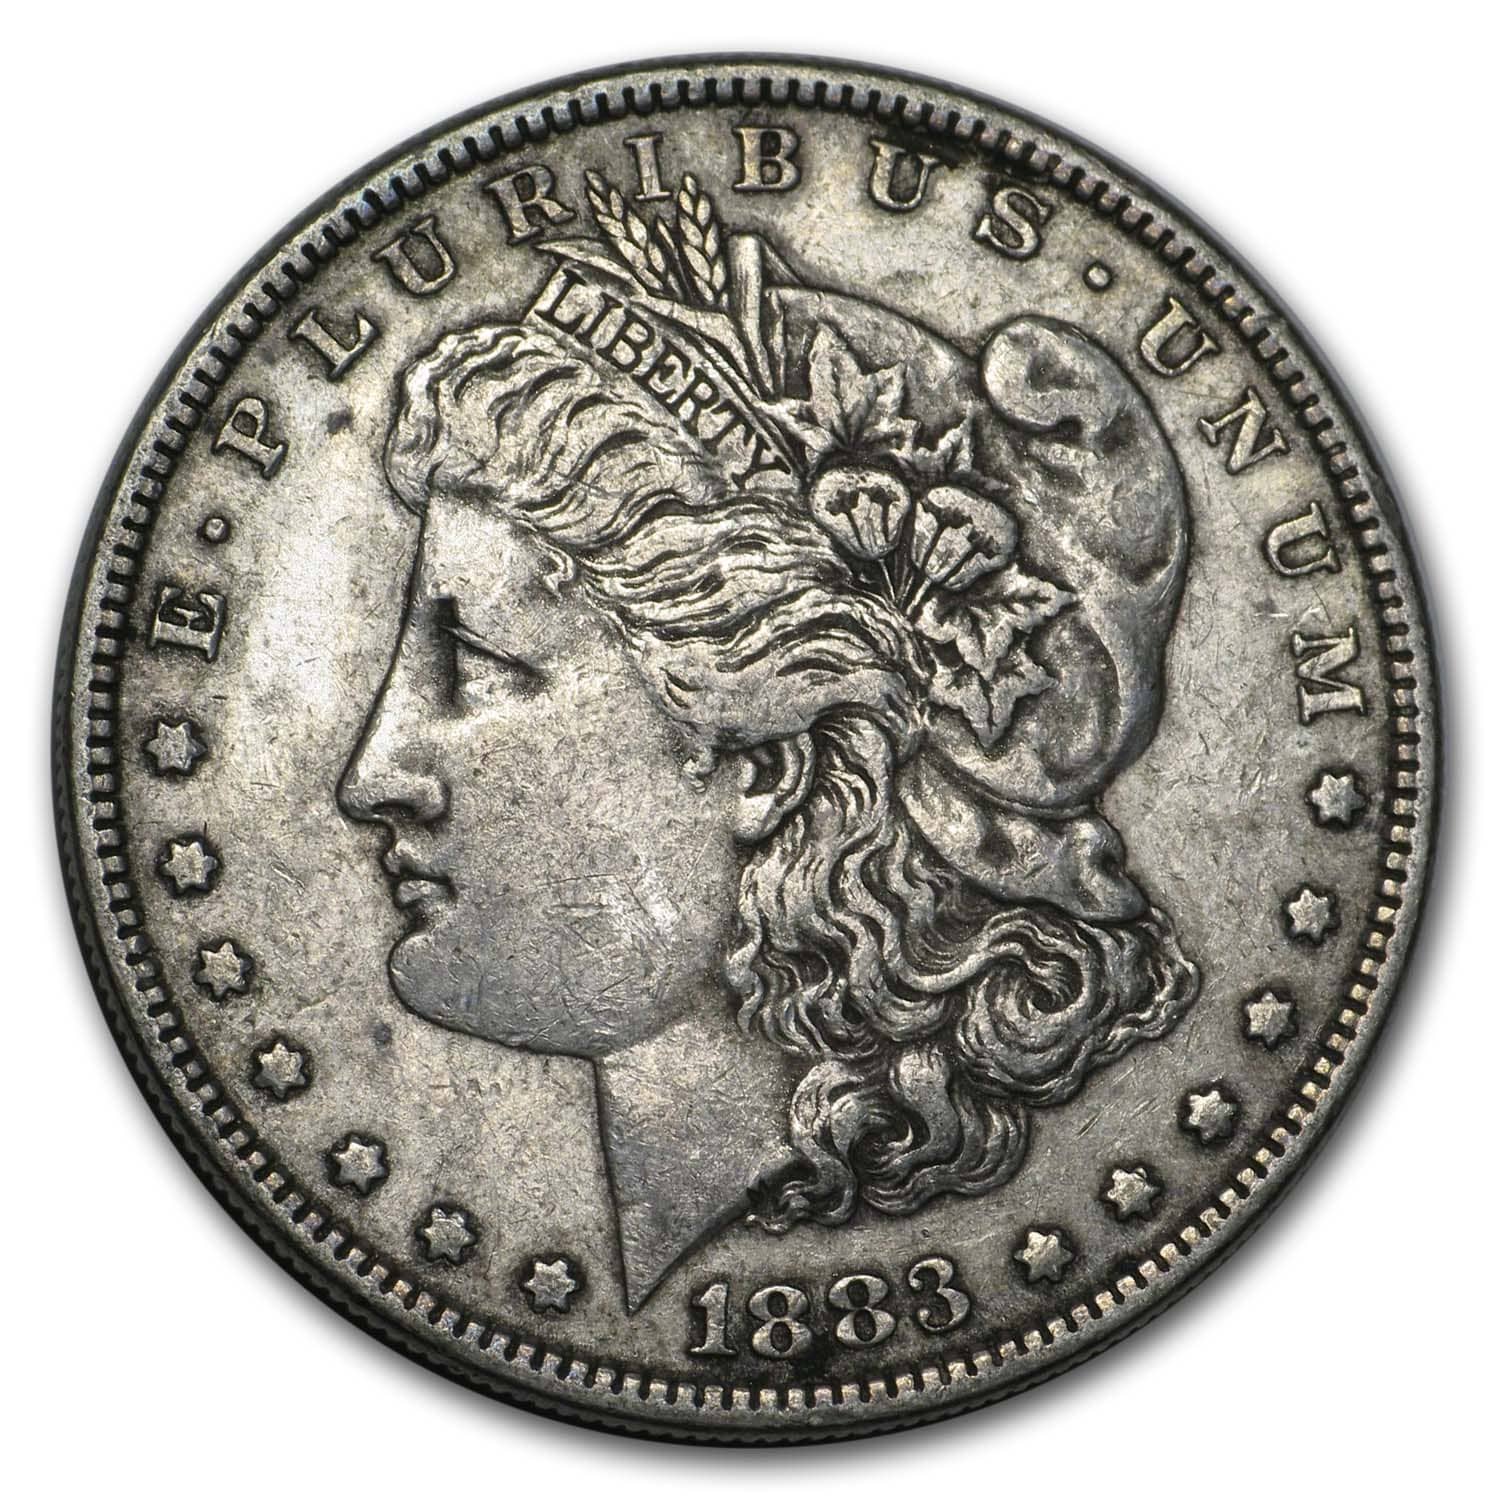 Buy 1883 Morgan Dollar XF